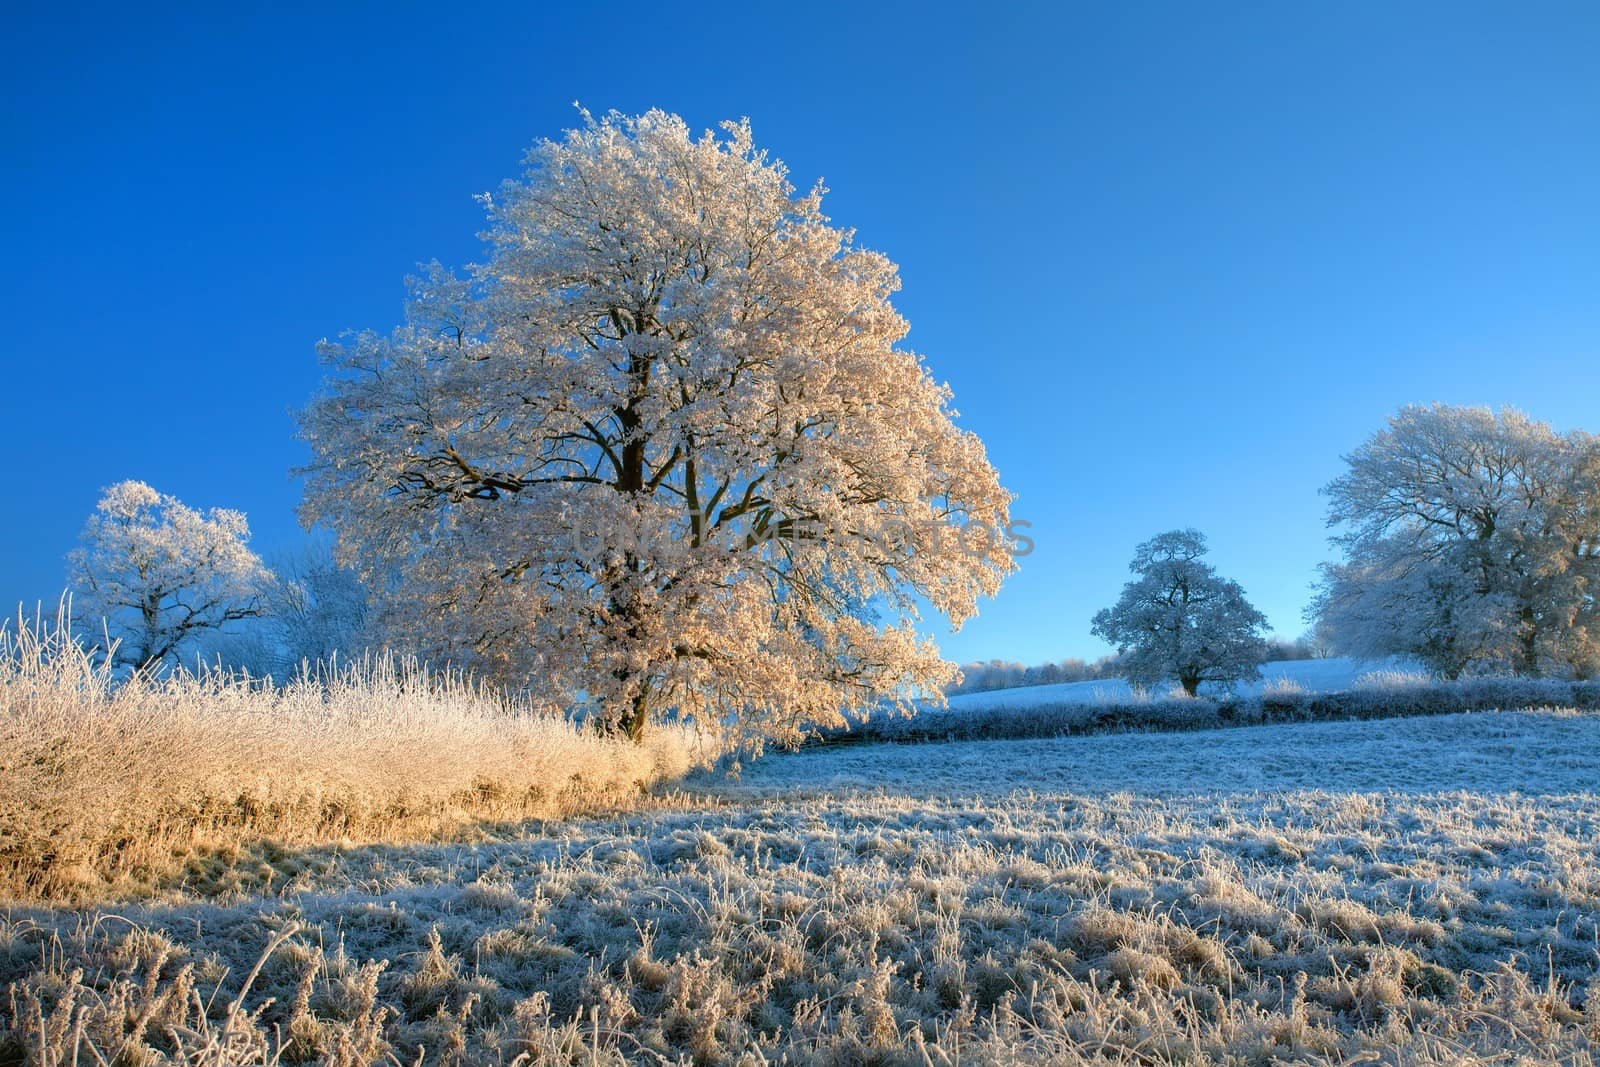 English farmland in winter by andrewroland